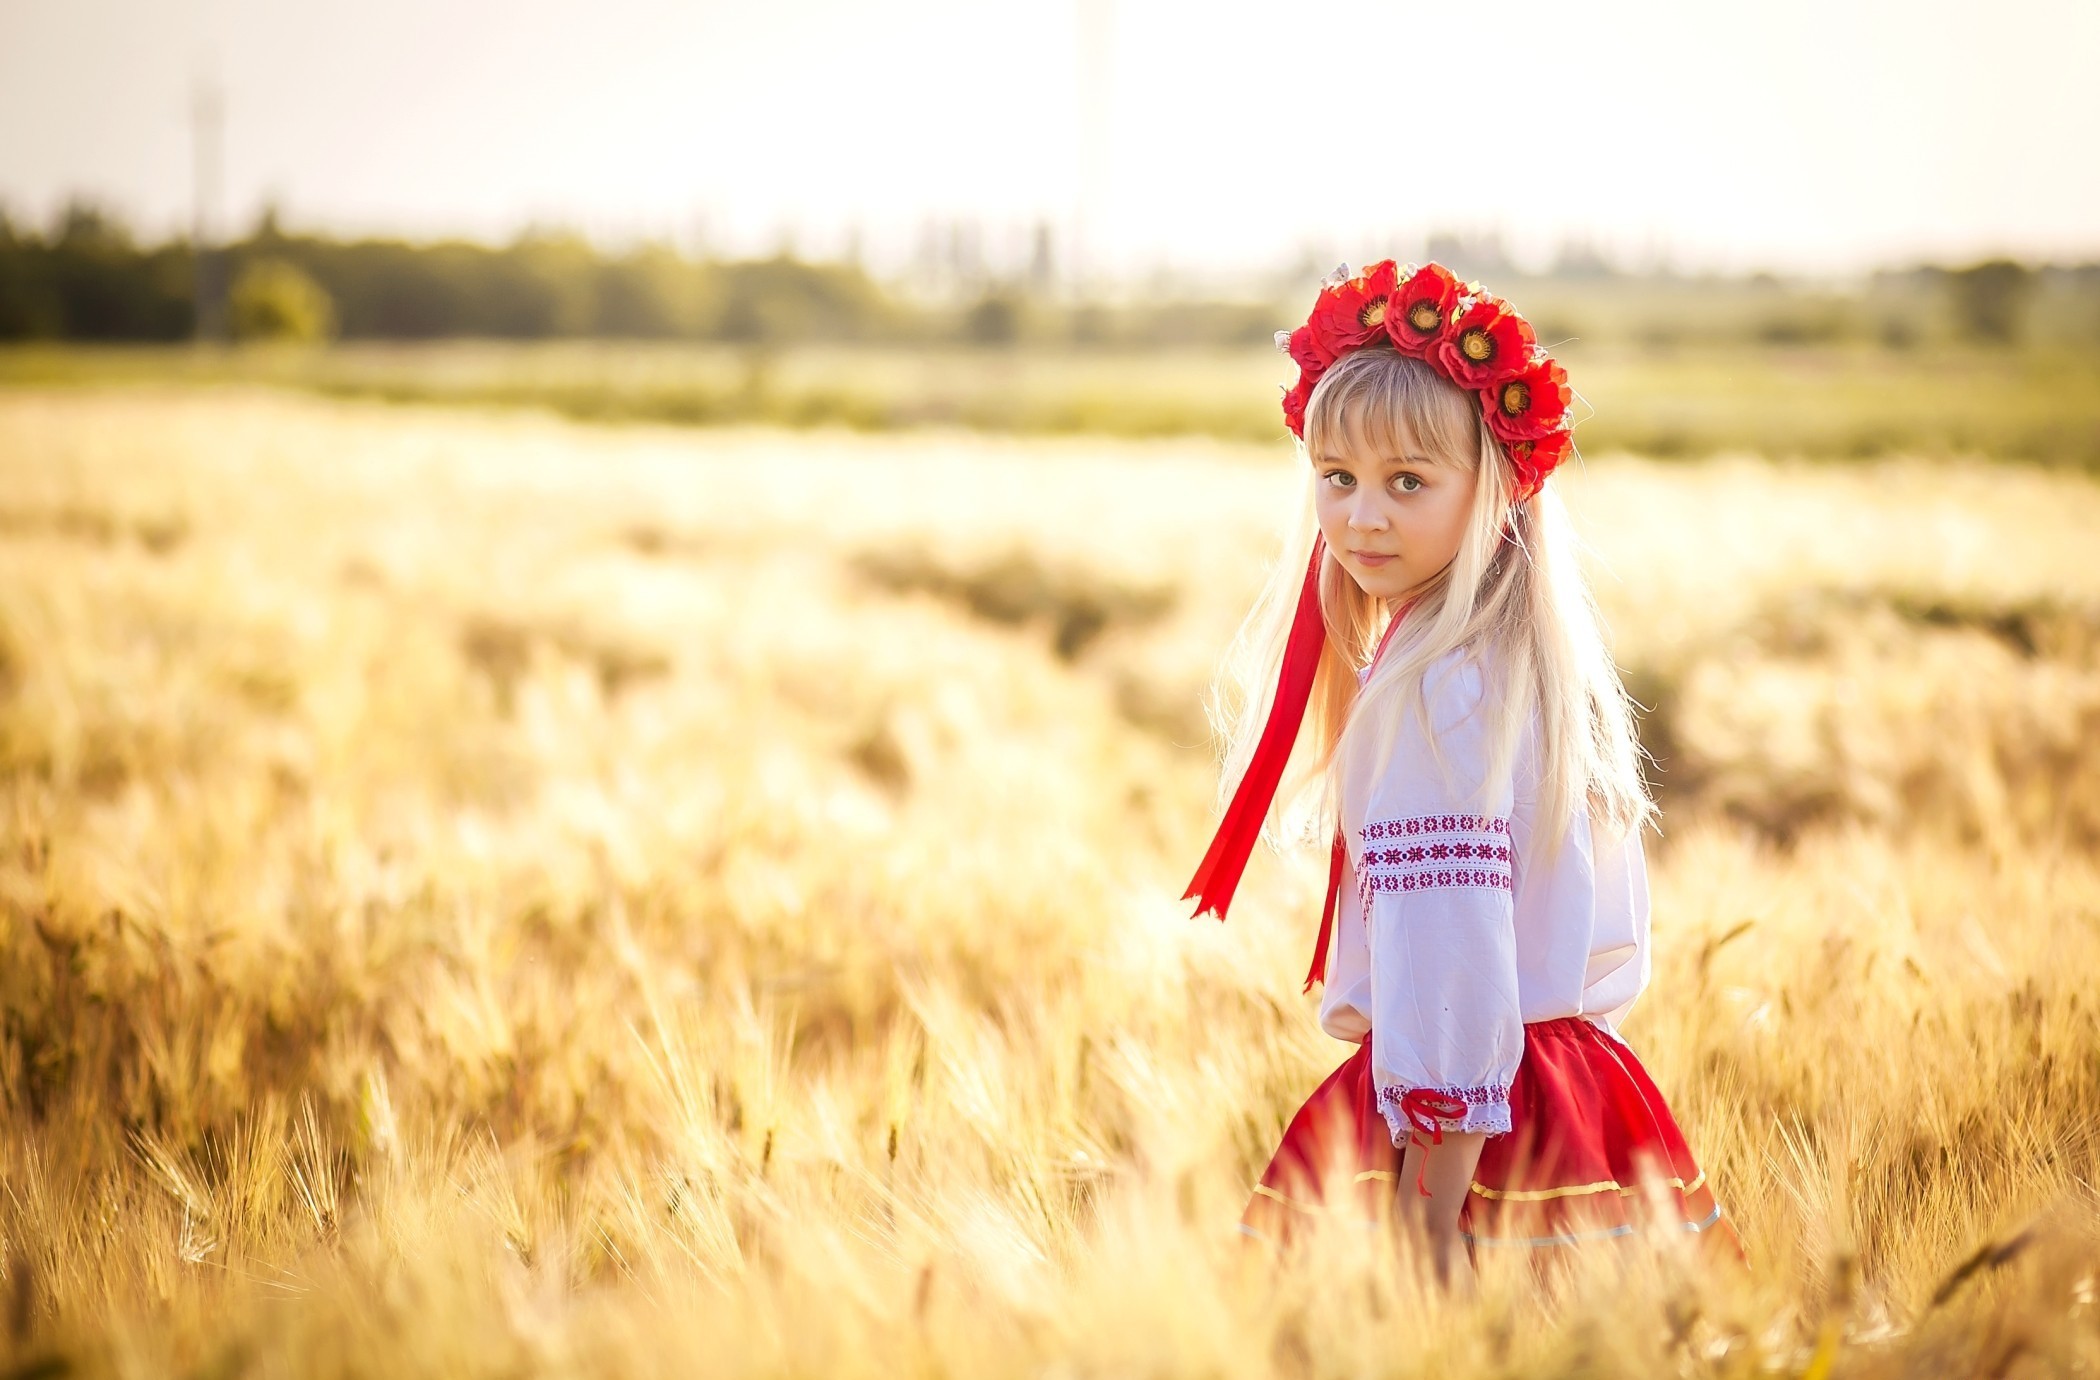 3 ukrainian. Украинская девушка в поле. Красивые славянские дети. Фотосессия в пшеничном поле. Славянская девочка.